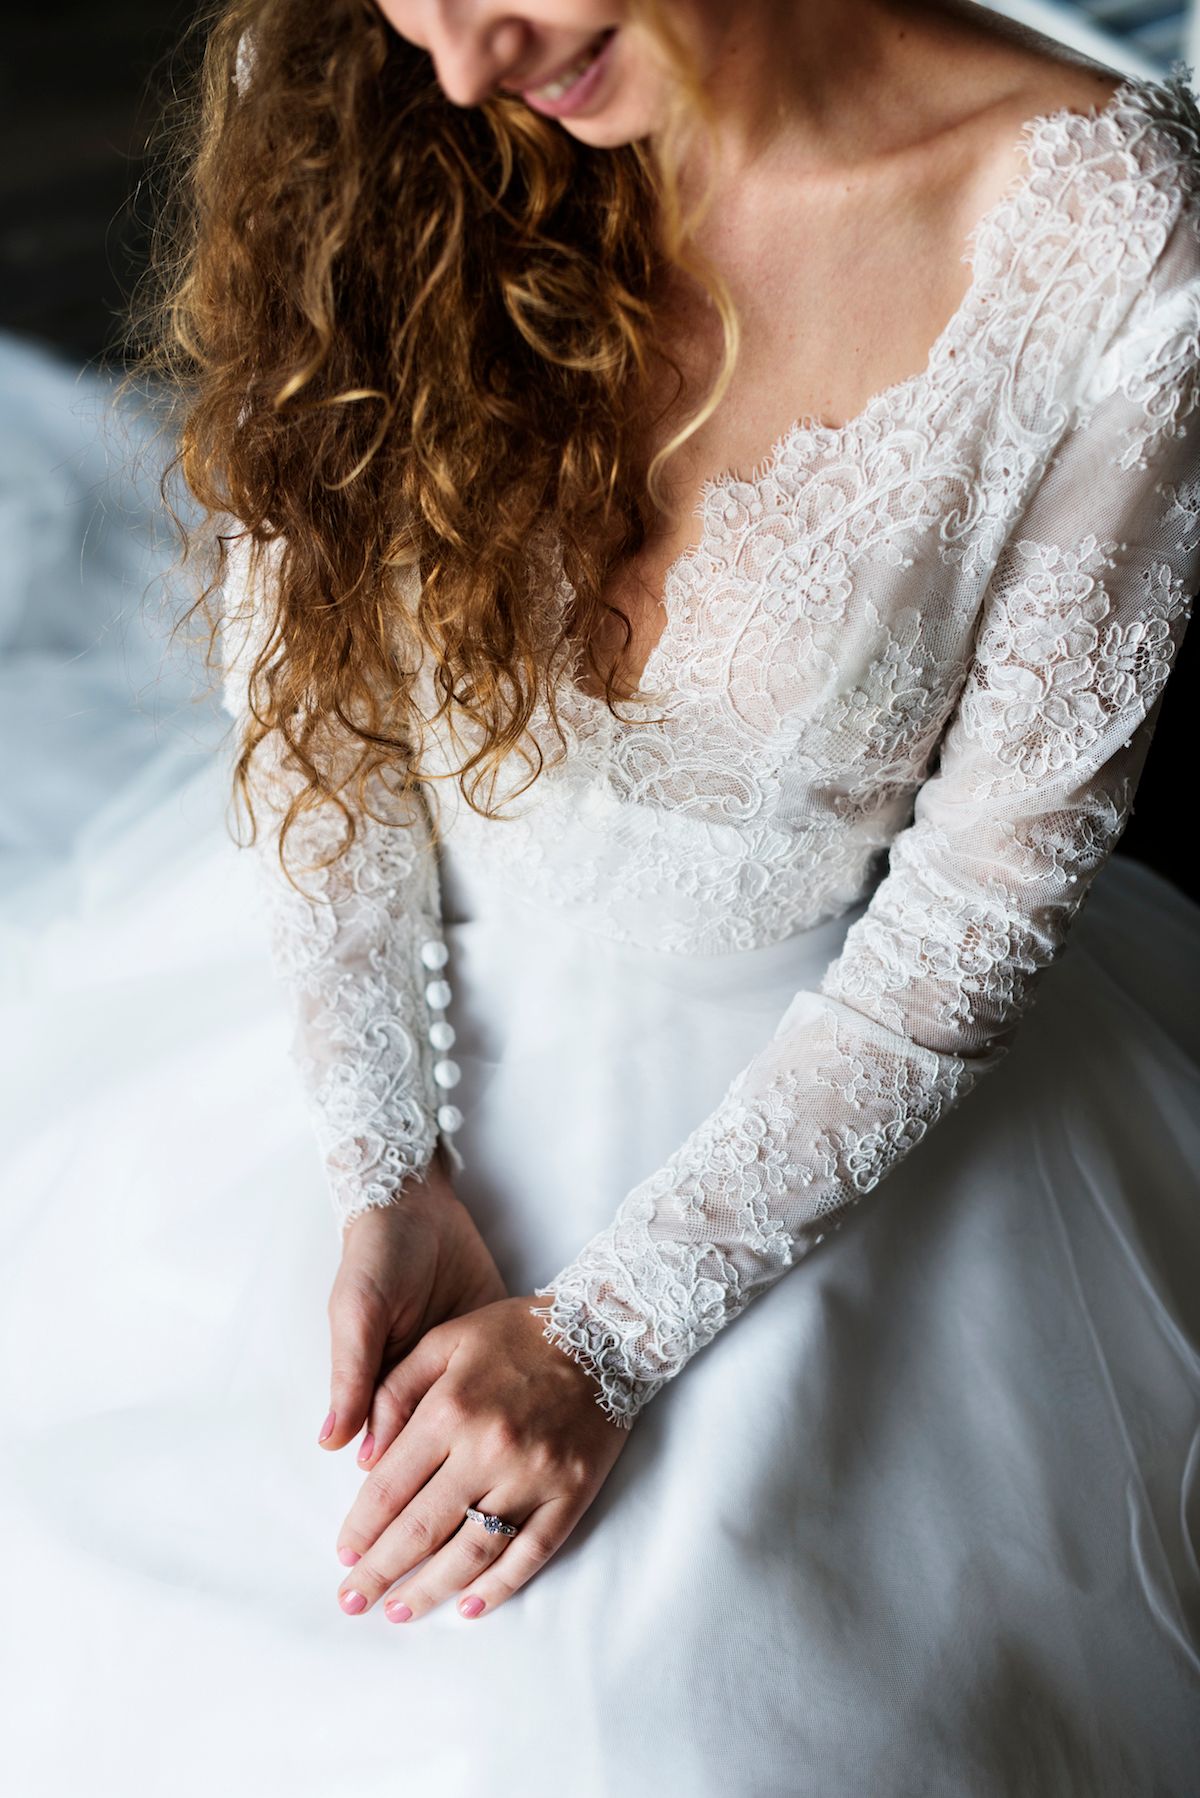 Eine Braut im Hochzeitskleid sitzt auf einem Bett.